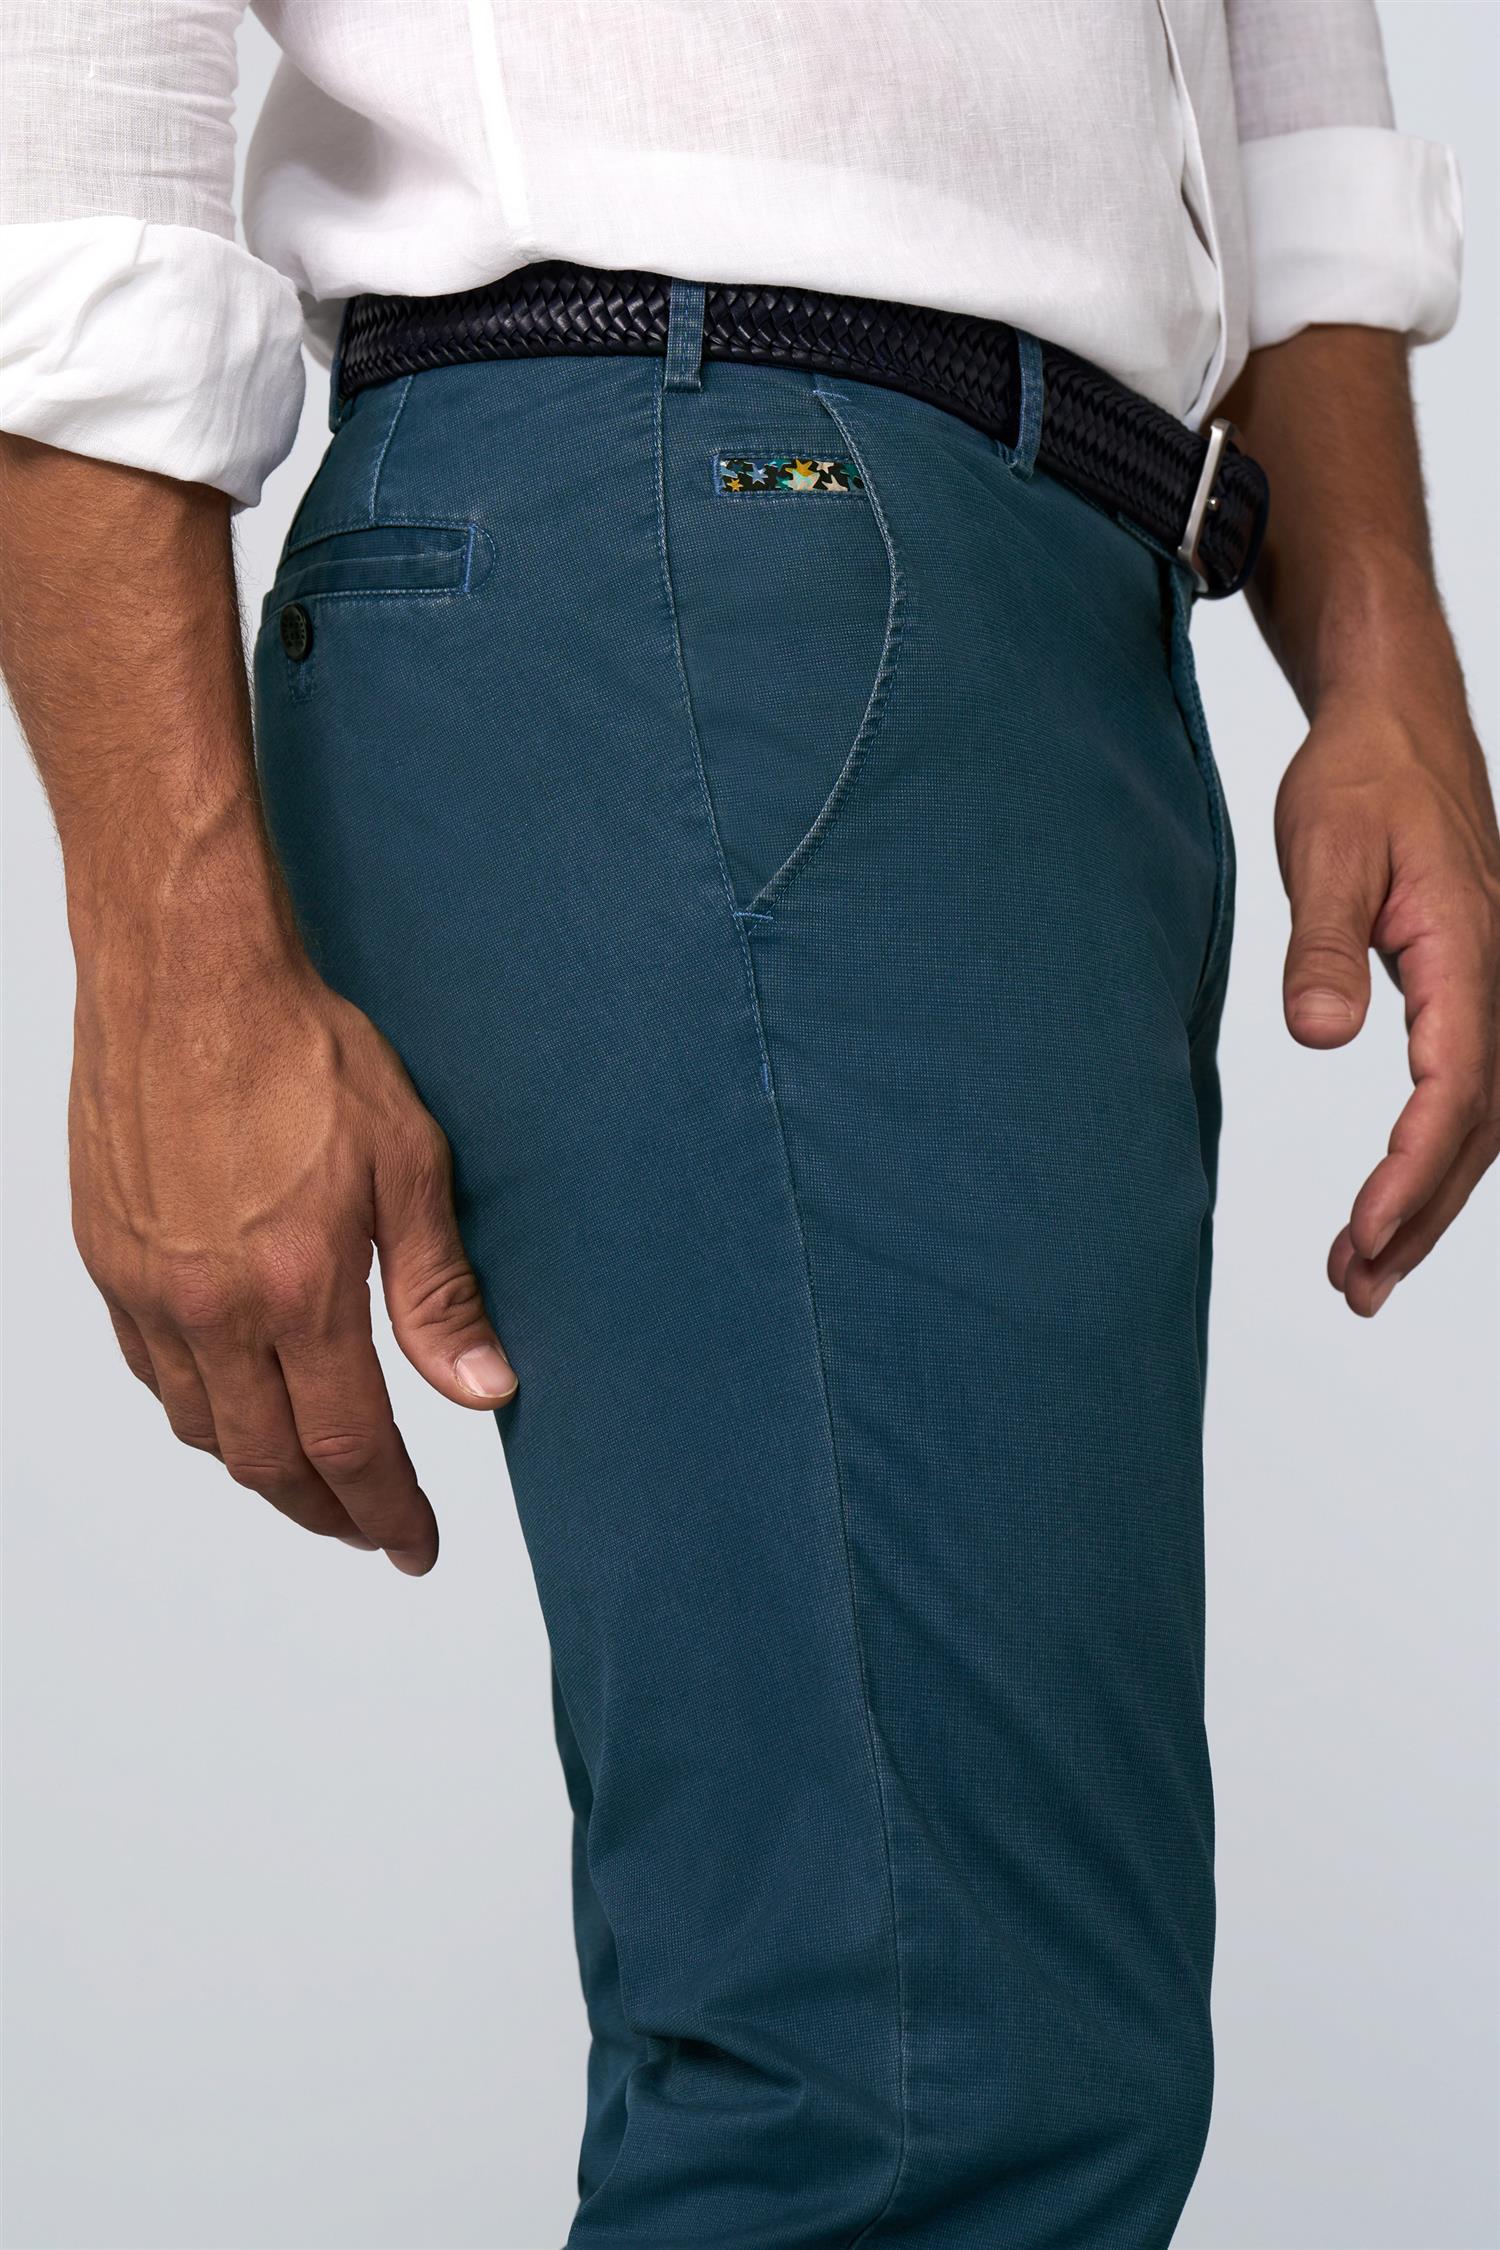 Meyer Bukse Mellomblå fra siden på herremodell med brunt strikkbelte